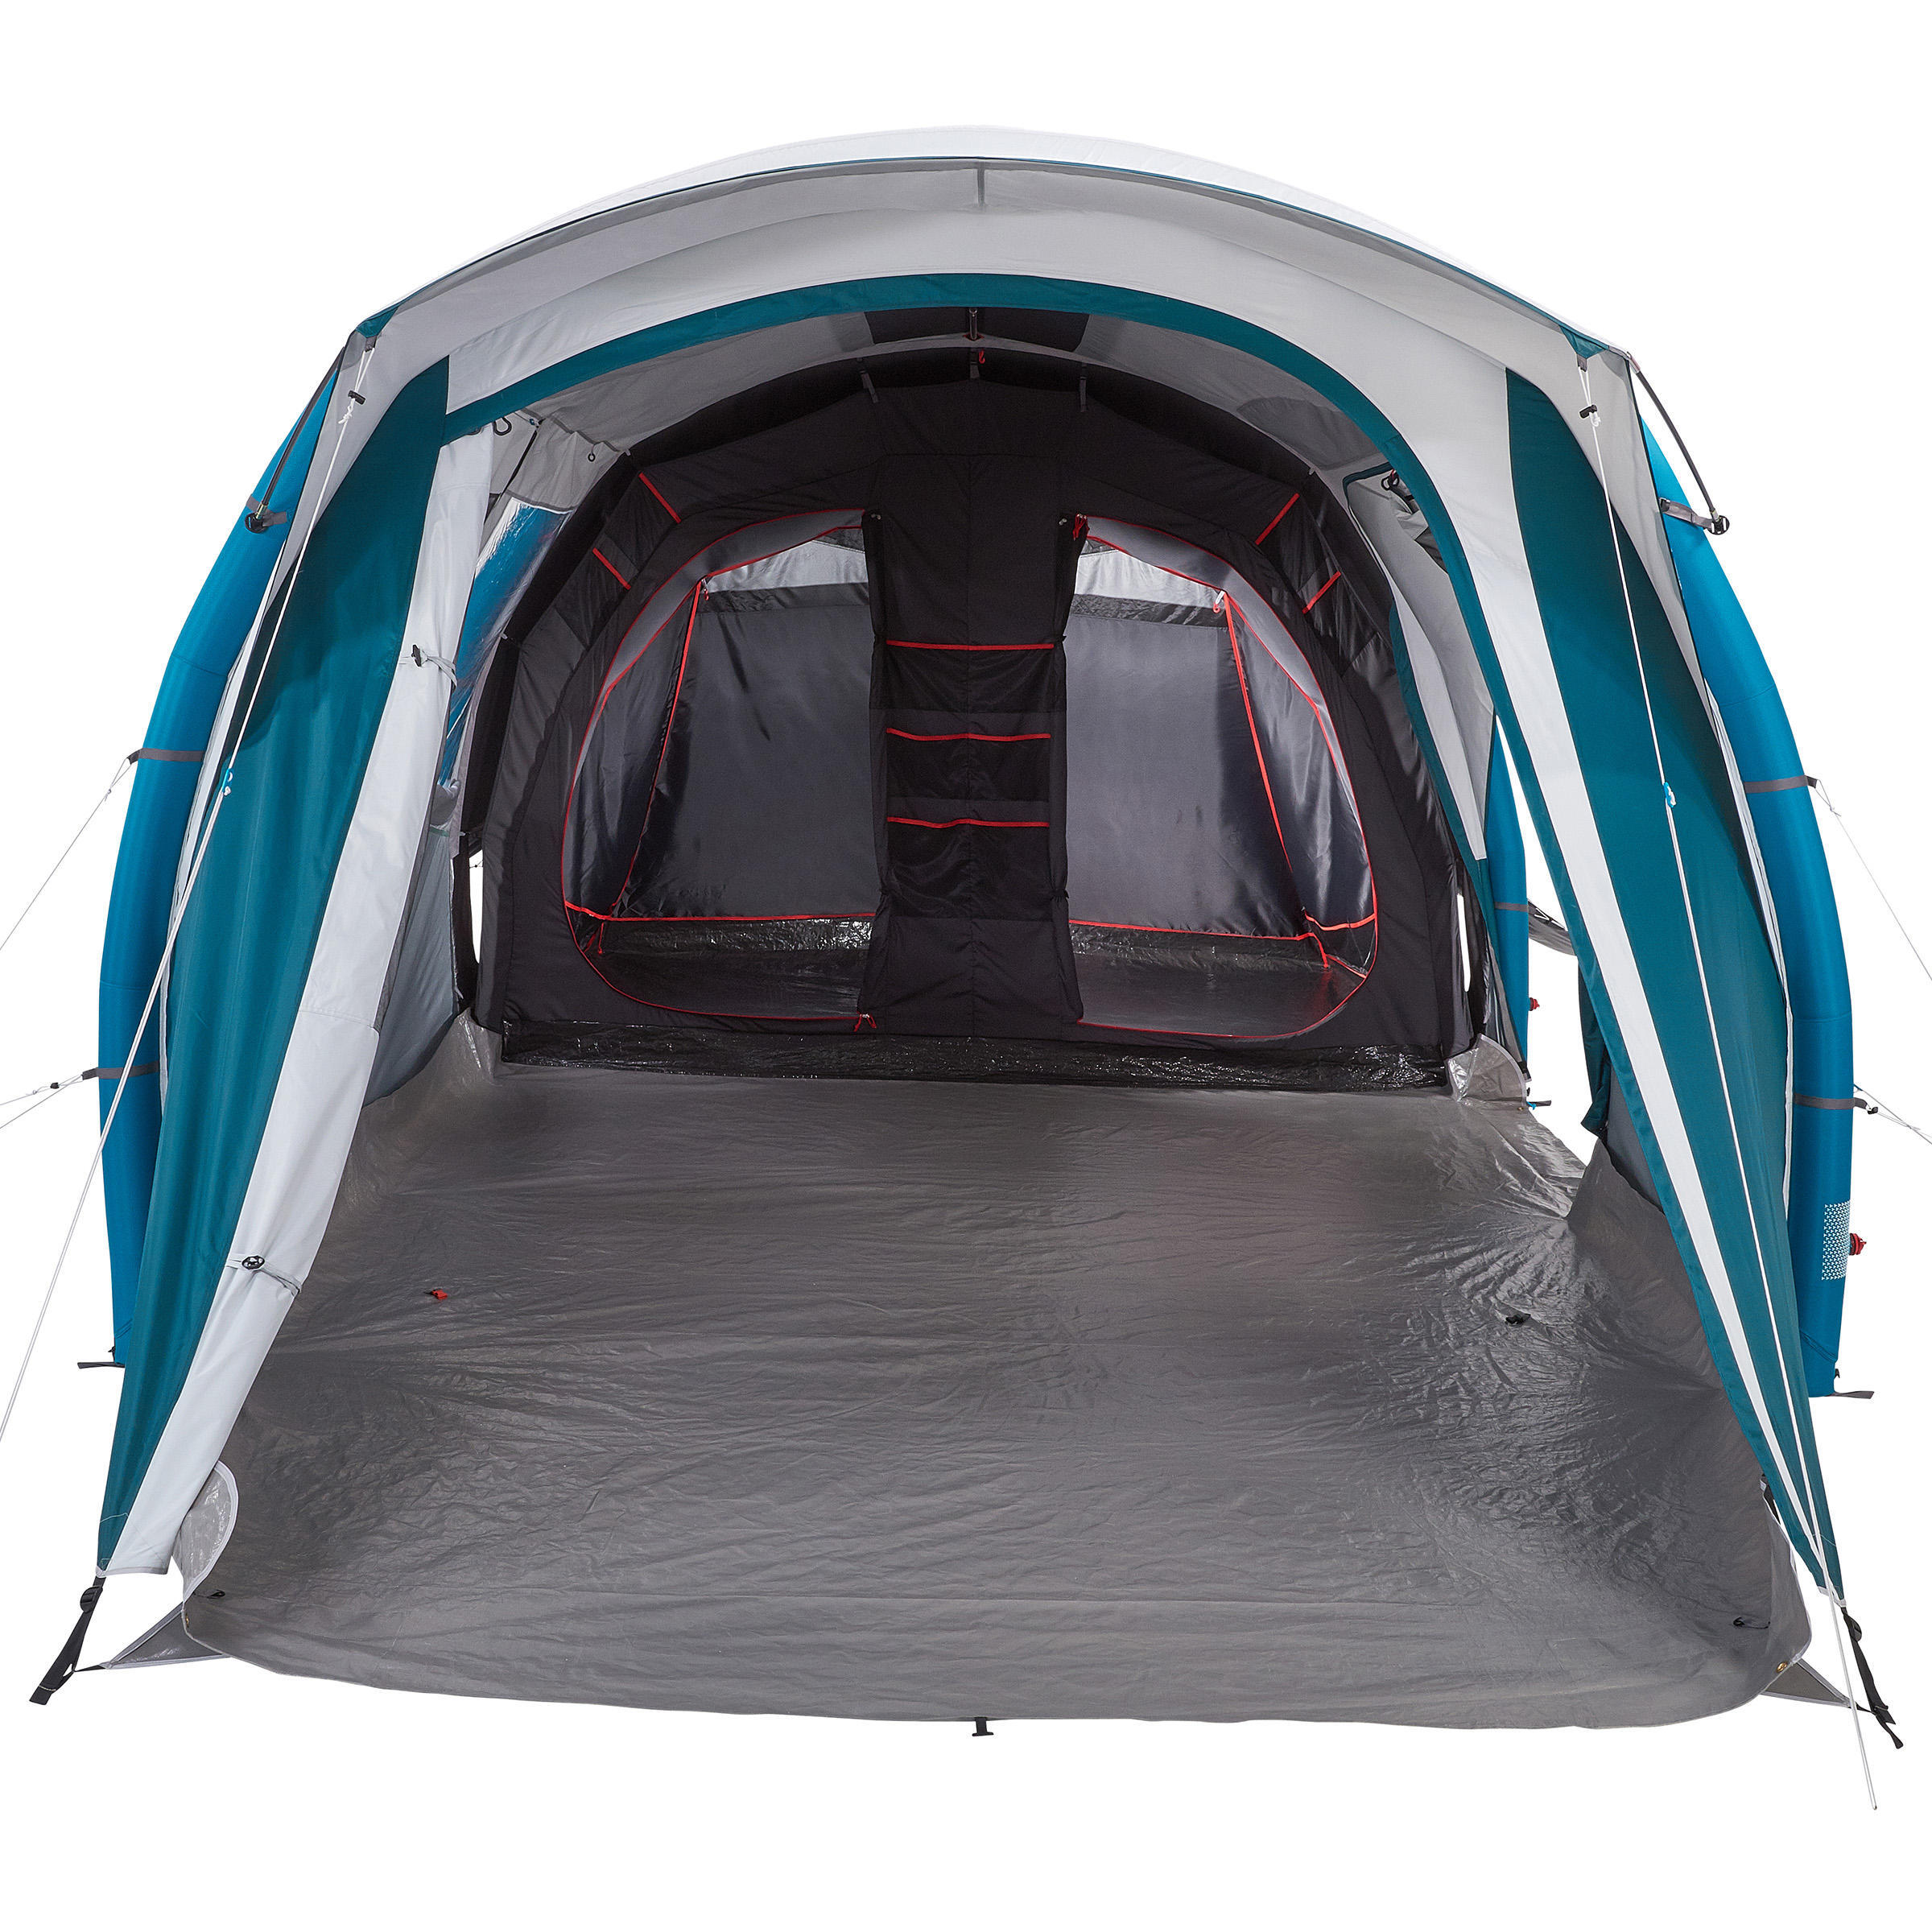 Спальный отсек и пол палатки Quechua Air Seconds 6.3 F&B в качестве запчасти для модели палатки